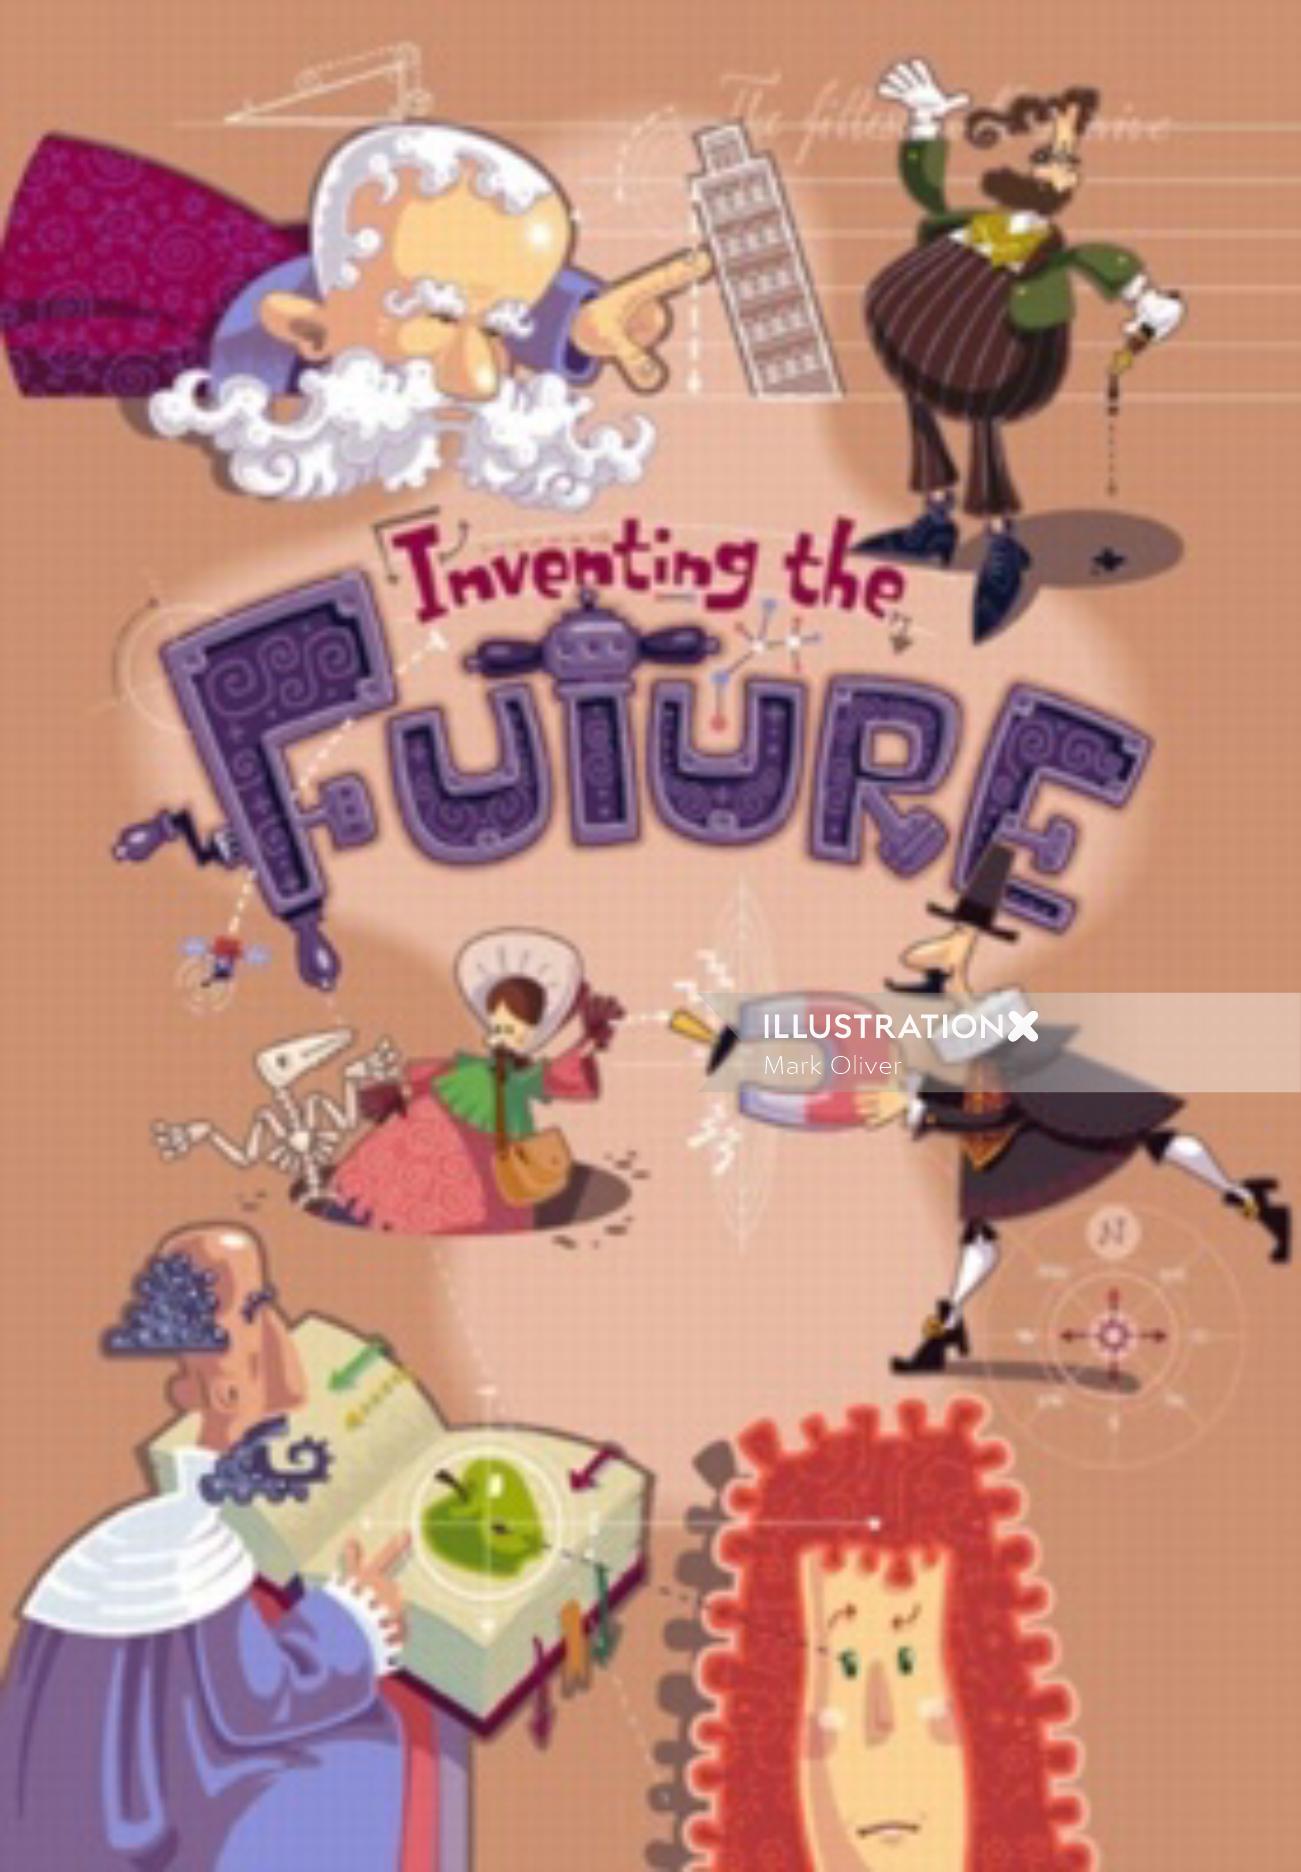 Arte em livro infantil Inventando o Futuro